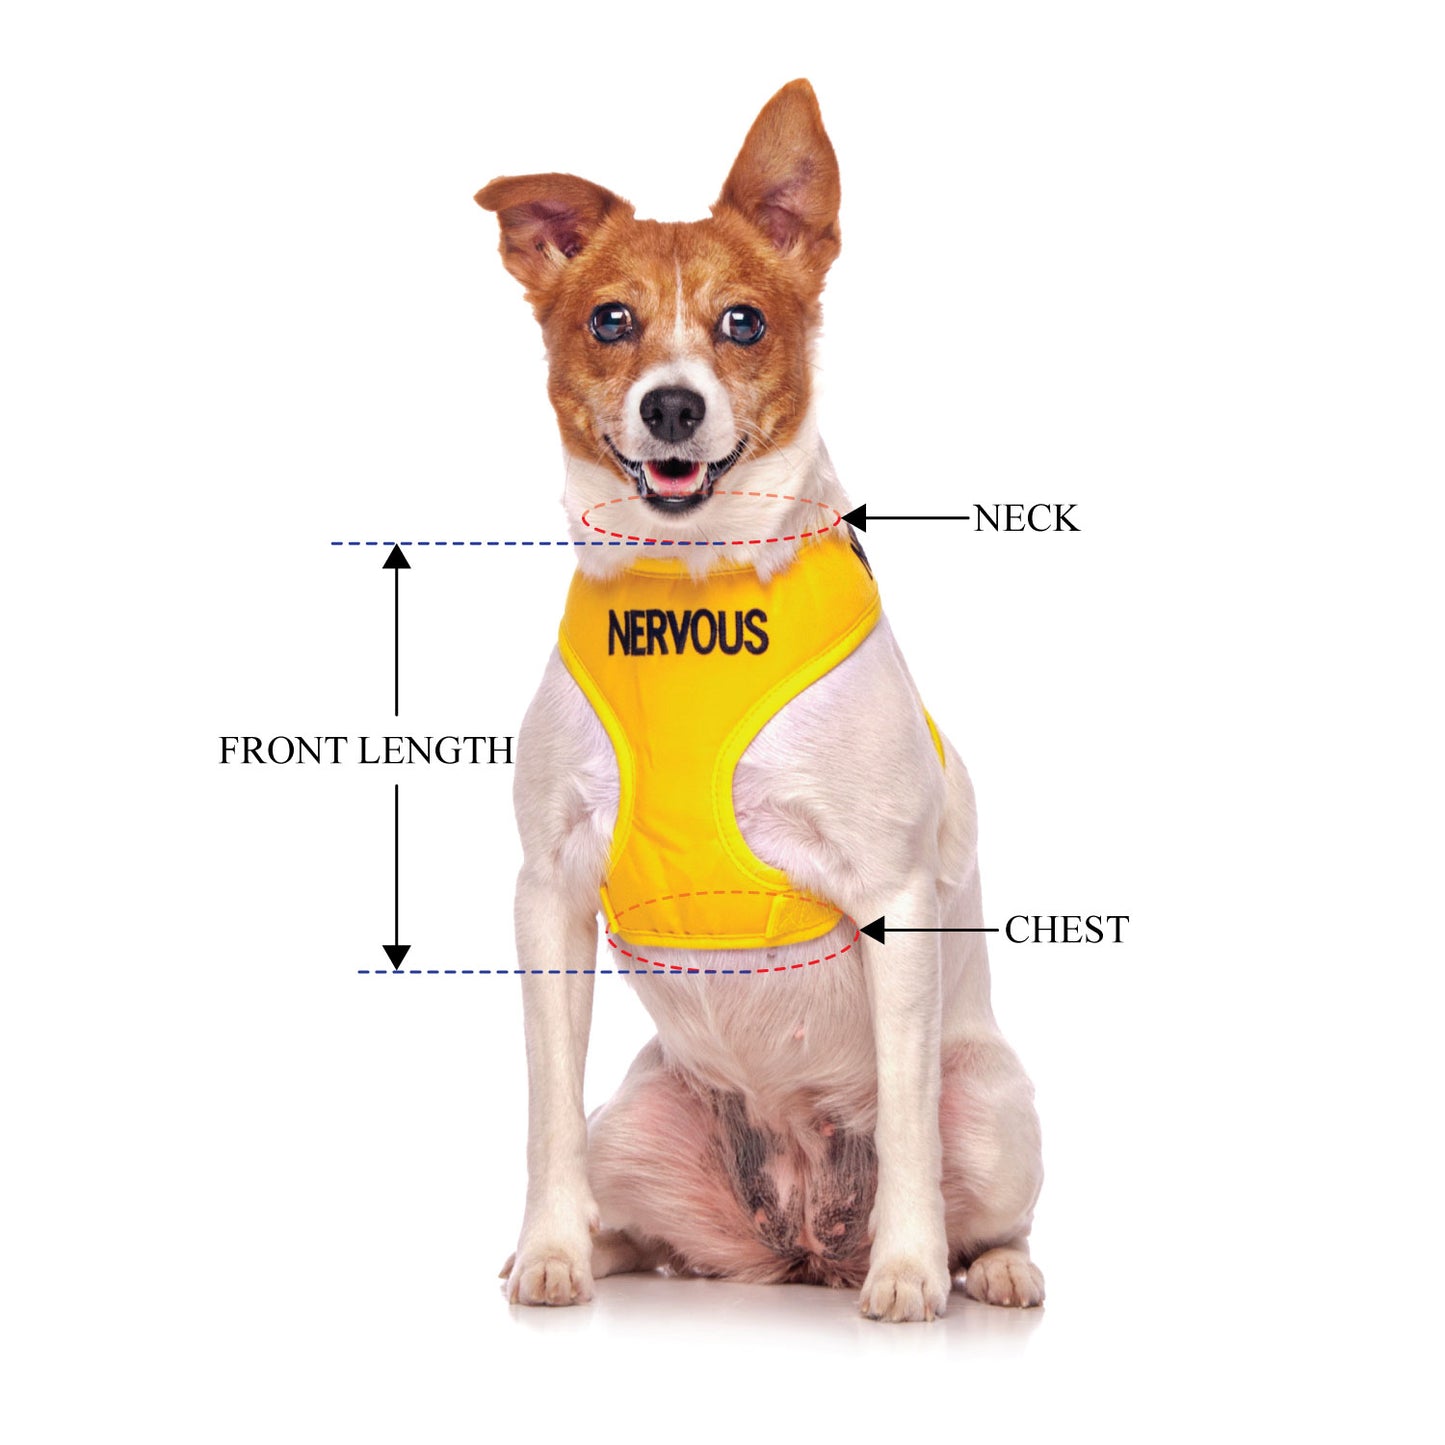 NERVOUS - Small adjustable Vest Harness